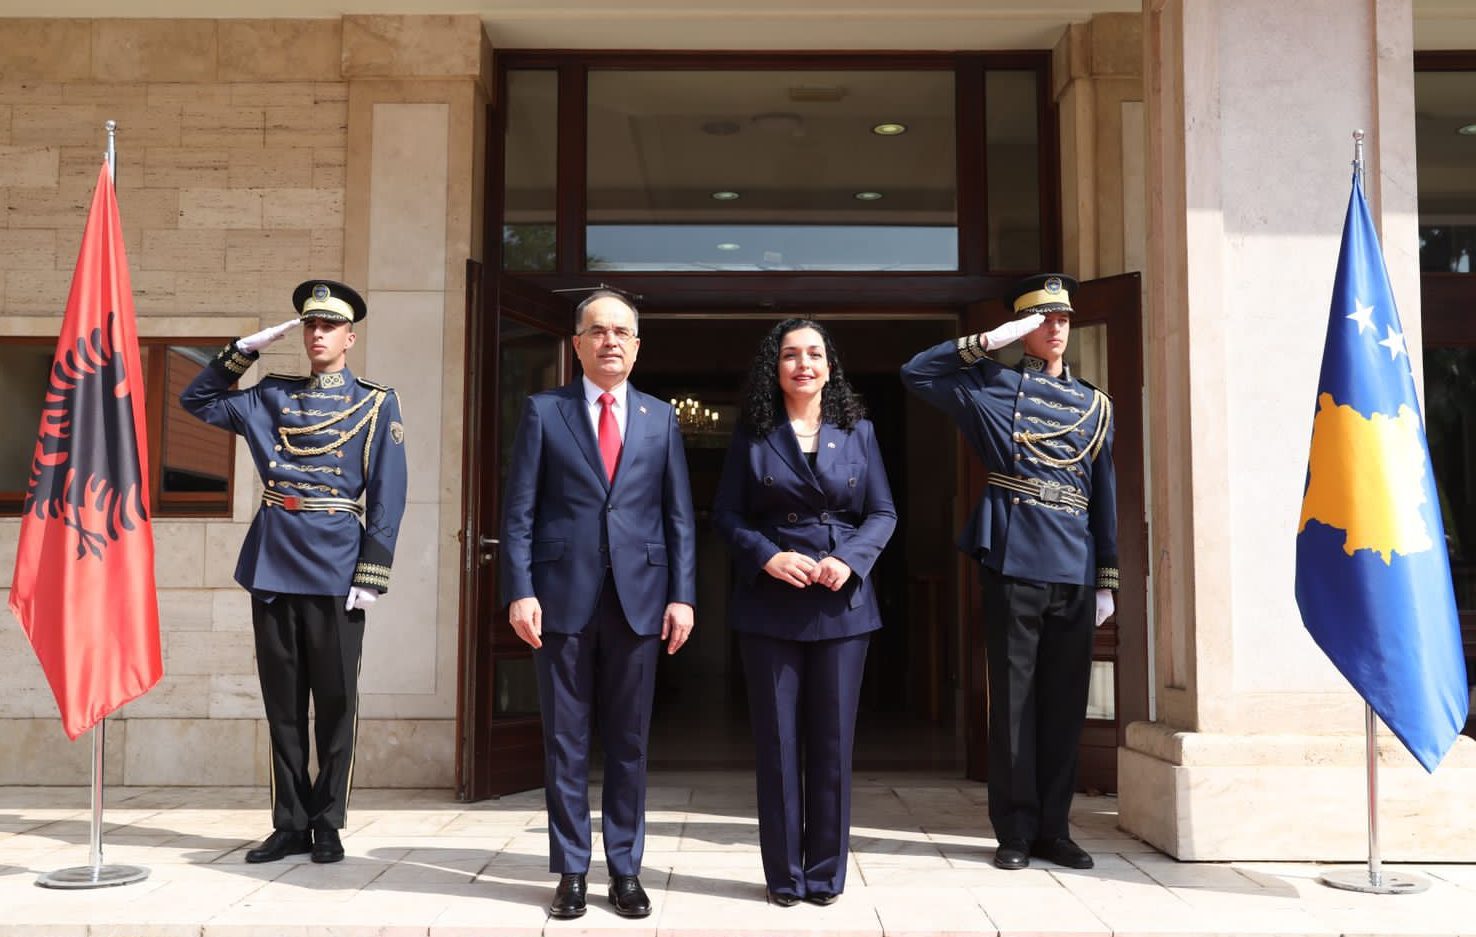 Presidenti i Republikës, Sh. T. Z. Bajram Begaj pritet me ceremonitë më të larta shtetërore nga Presidentja e Kosovës, Sh. S. Znj. Vjosa Osmani – Sadriu